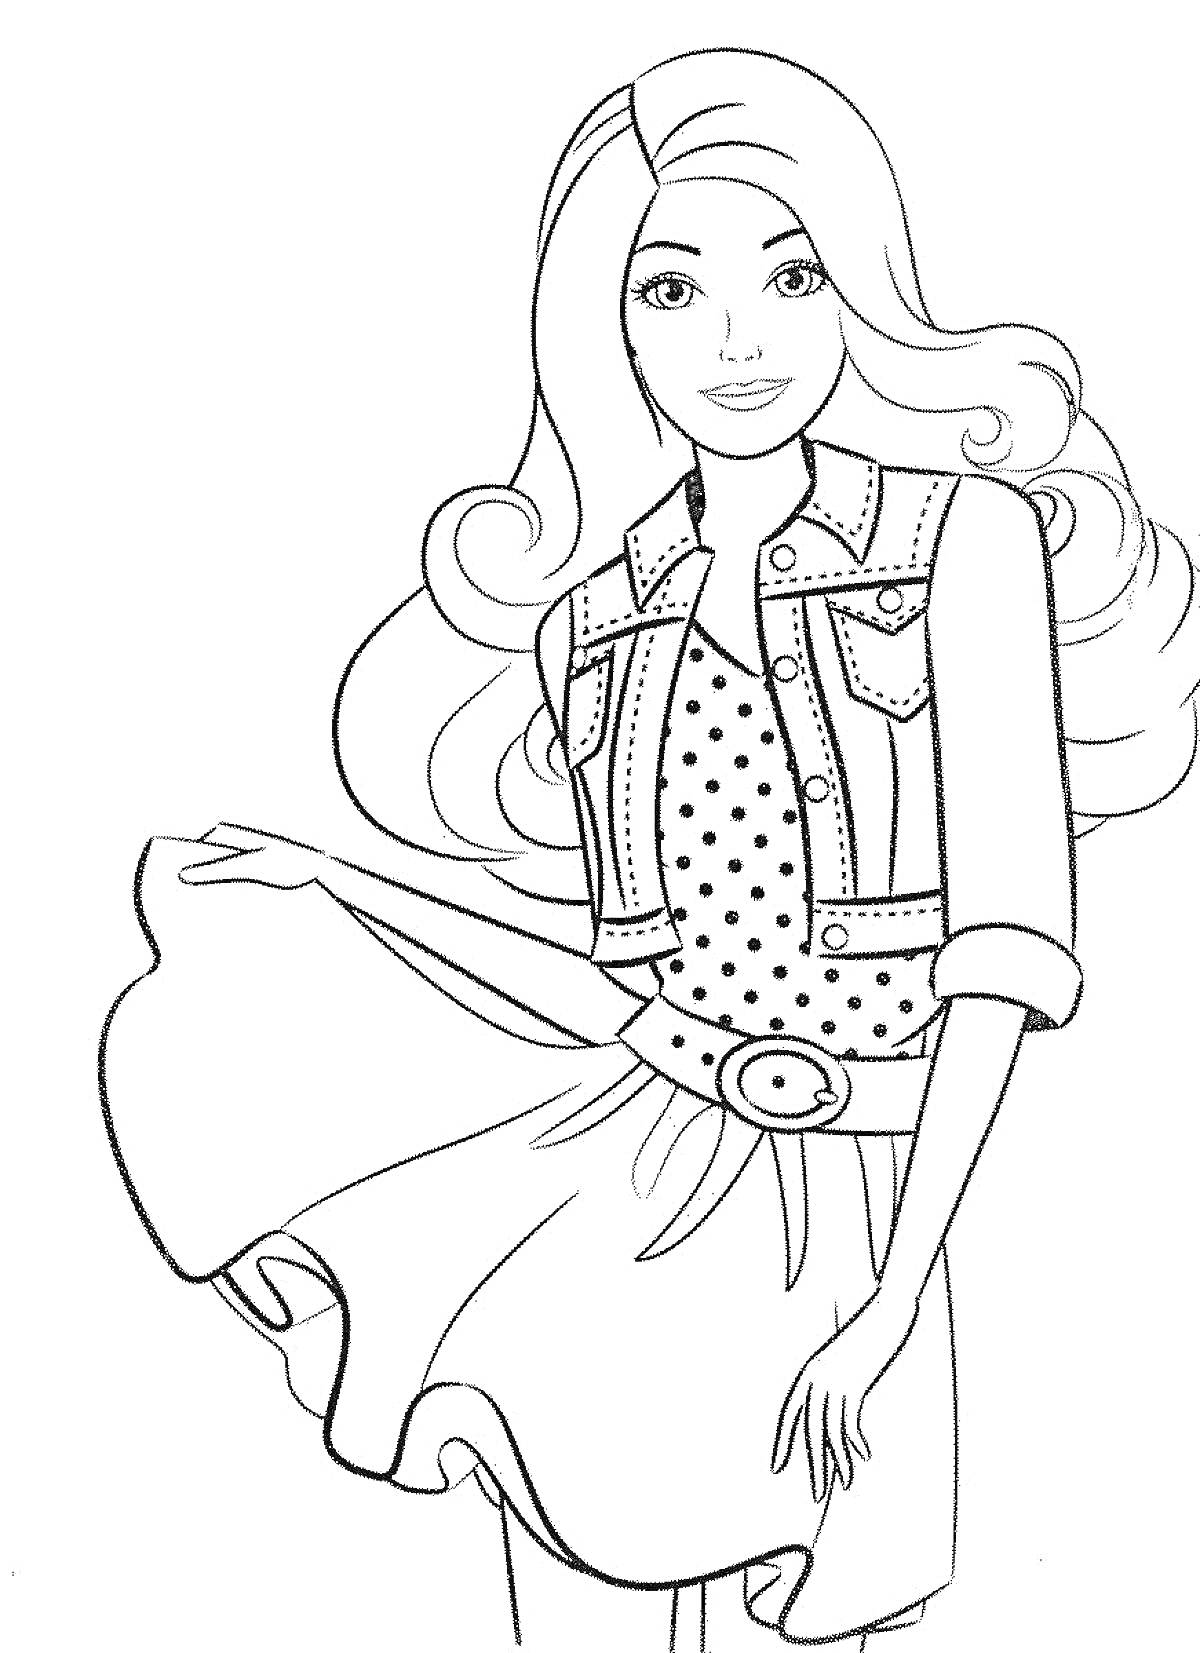 Раскраска Девочка с длинными волосами в джинсовой жилетке и платье с горохами